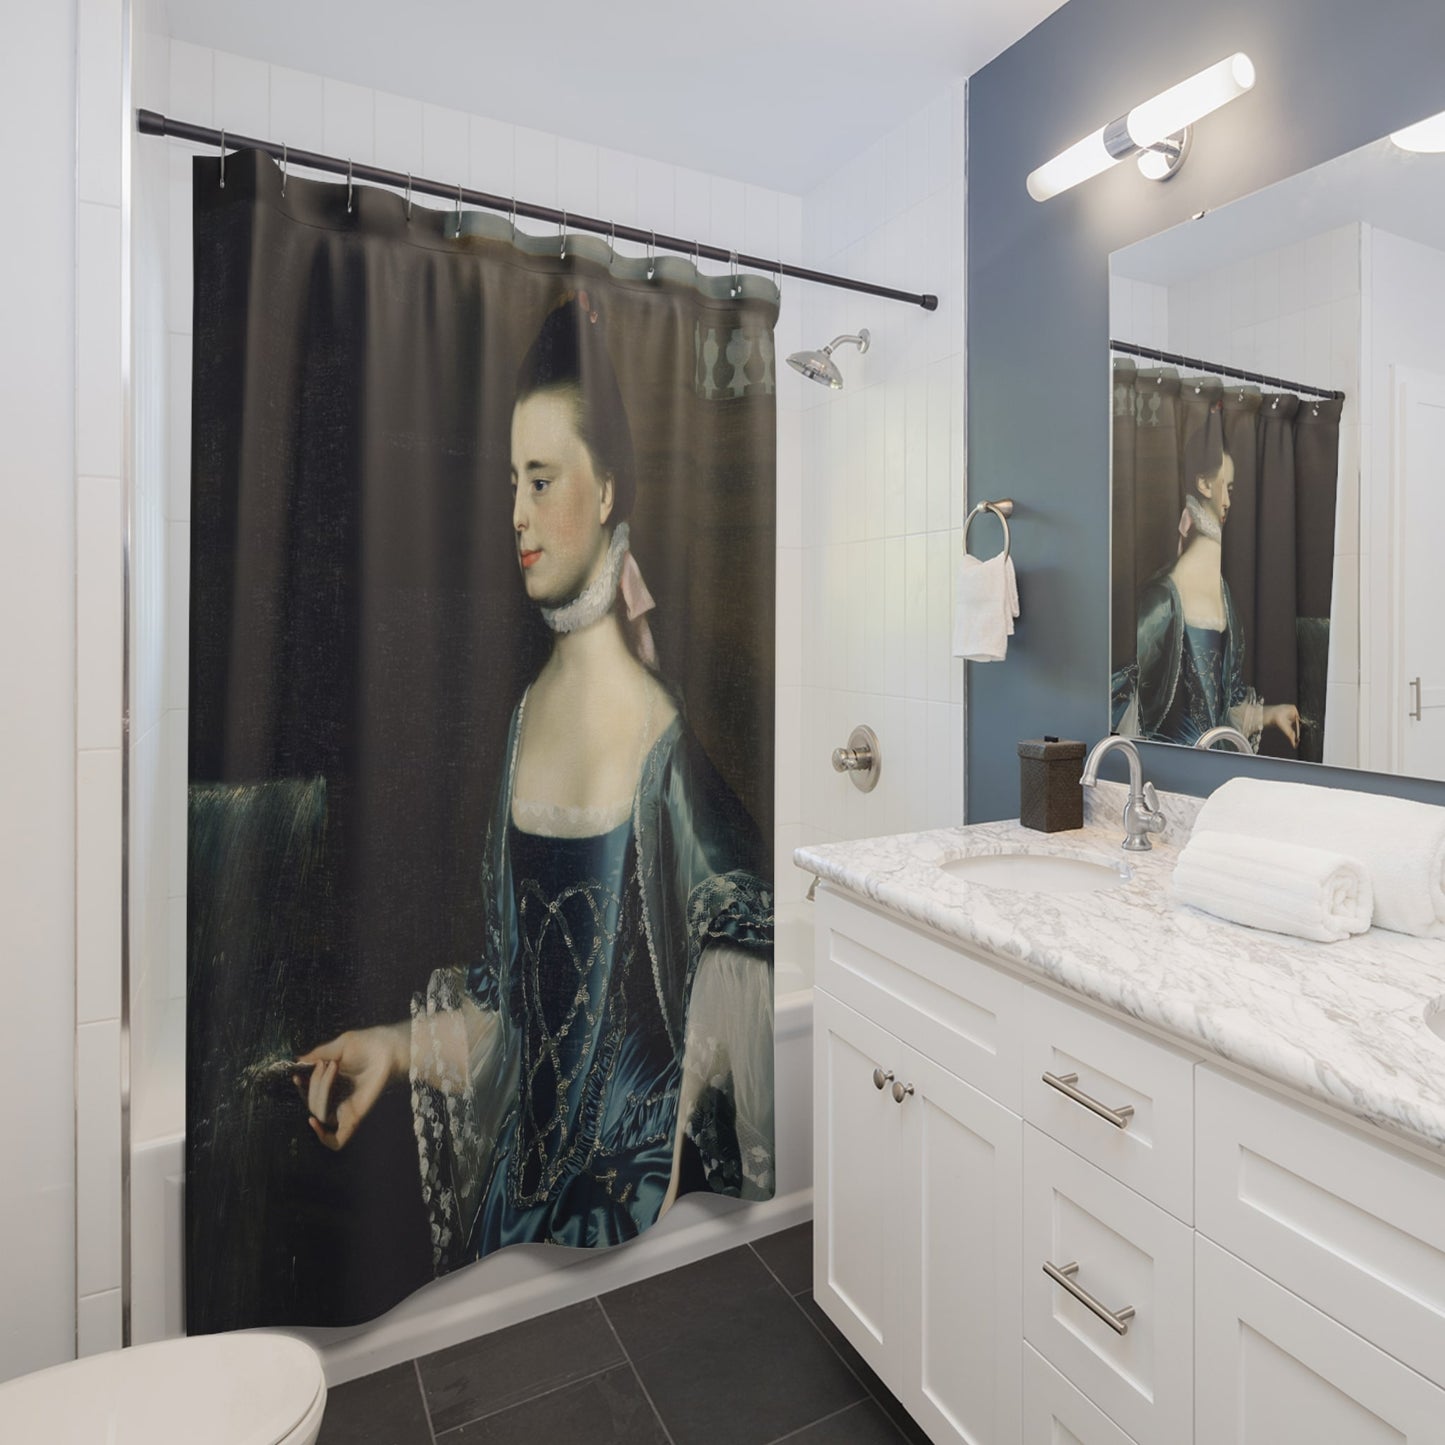 Renaissance Teacher Shower Curtain Best Bathroom Decorating Ideas for Dark Academia Decor